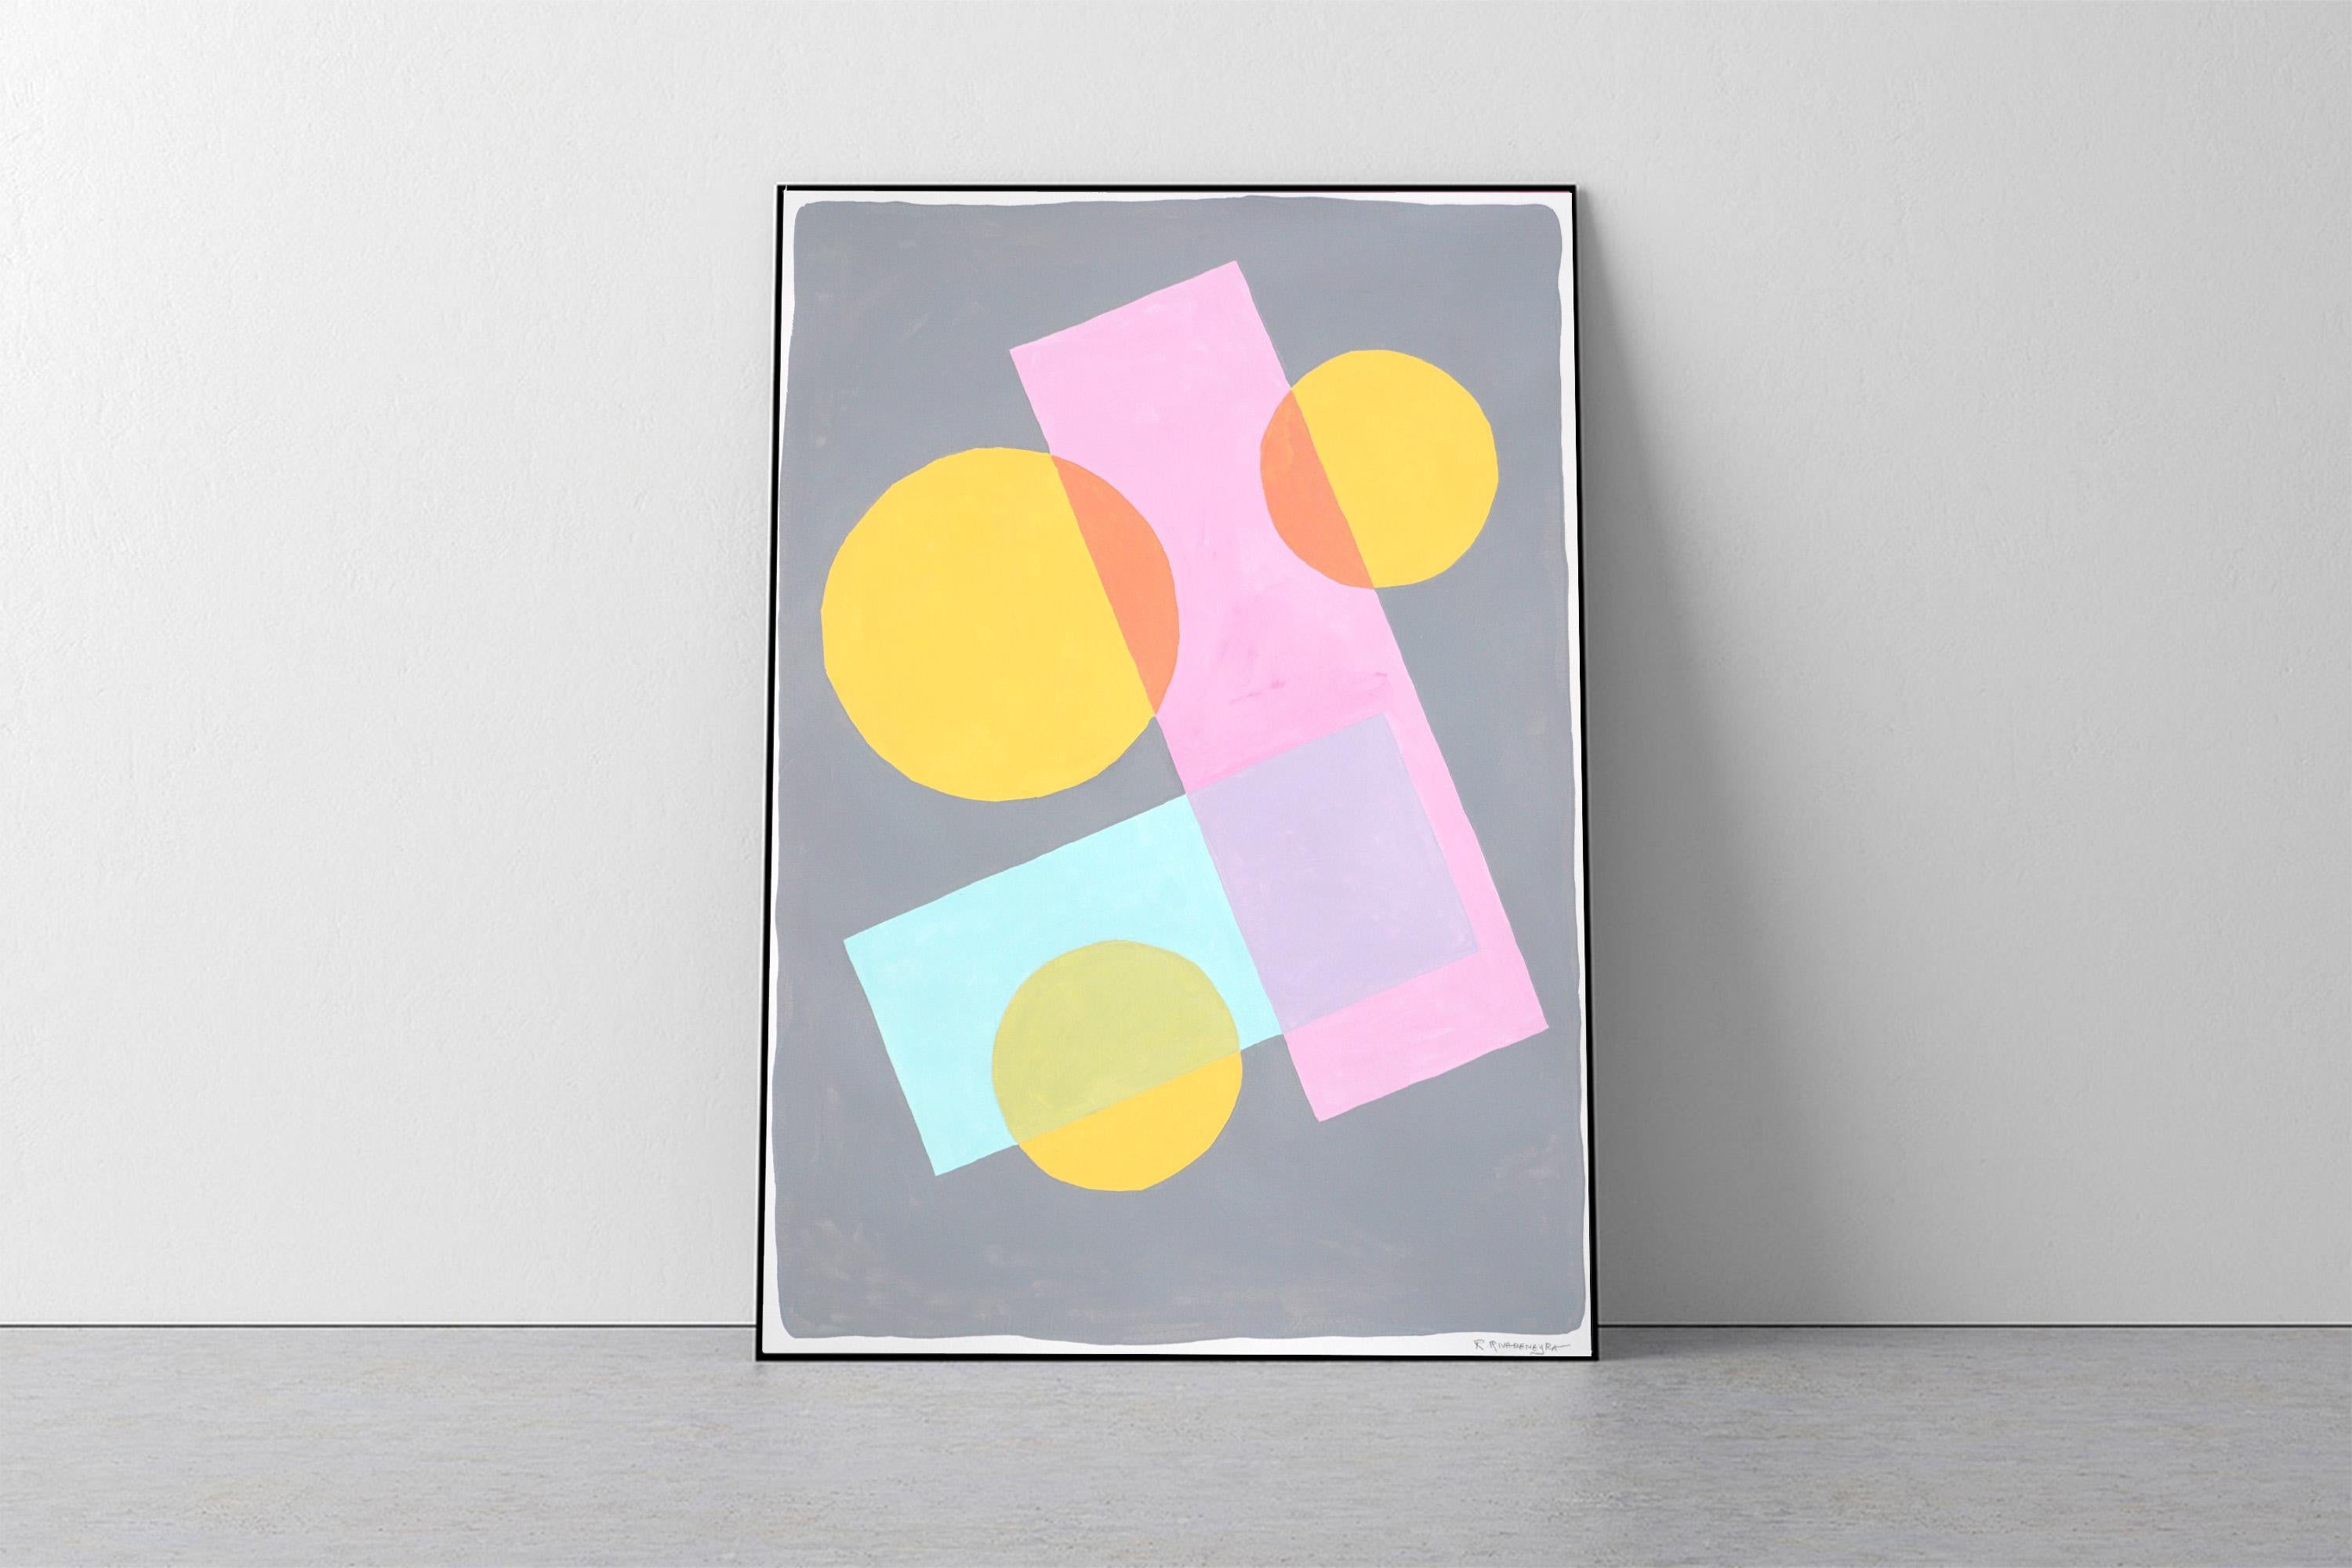 Formes constructivistes au pastel, peinture géométrique aux tons doux, bleu, rose, jaune - Painting de Ryan Rivadeneyra